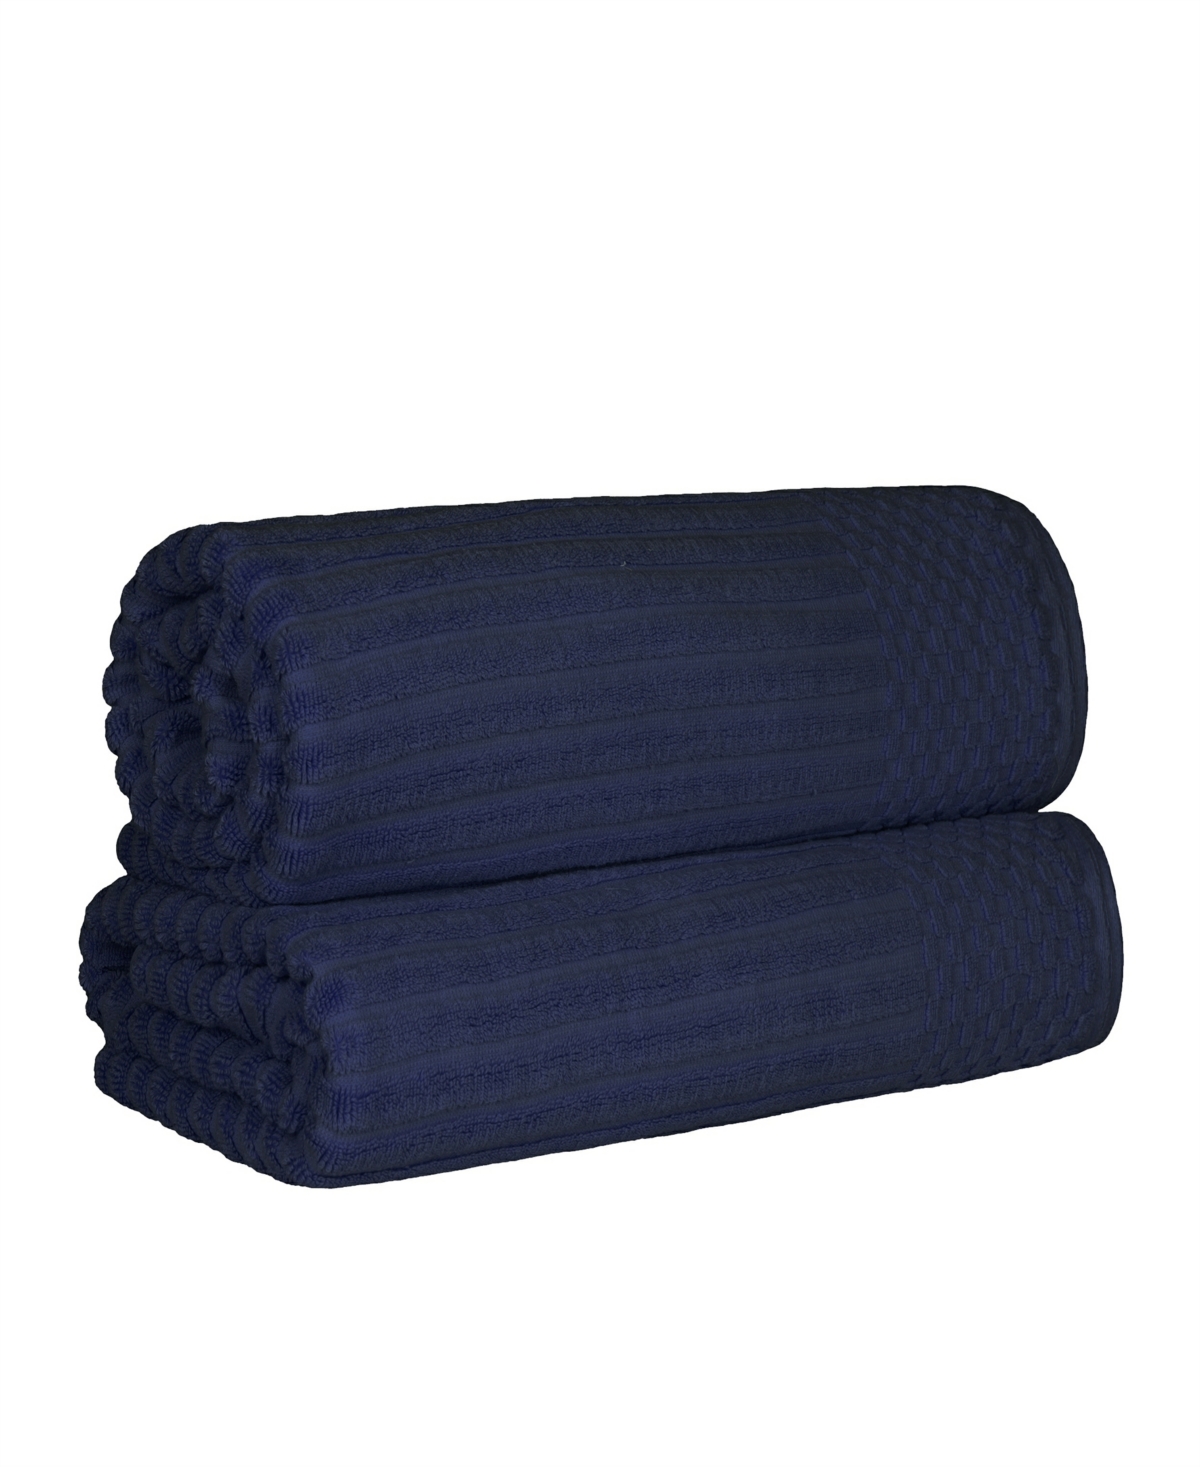 Superior Soho Checkered Border Cotton 2 Piece Bath Sheet Set, 68" X 34" In Navy Blue